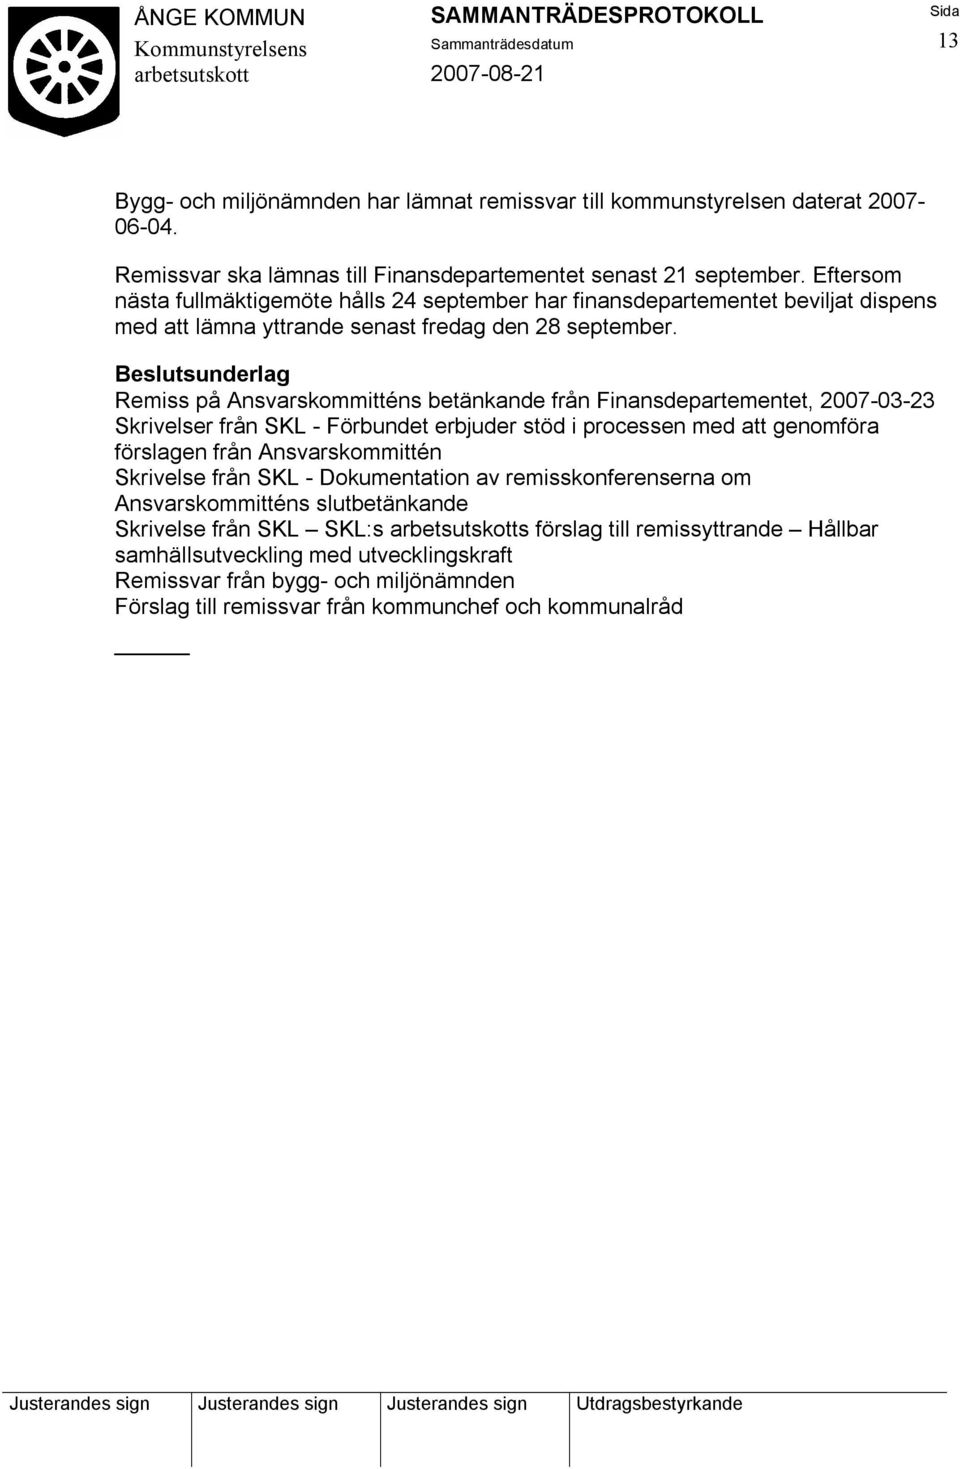 Remiss på Ansvarskommitténs betänkande från Finansdepartementet, 2007-03-23 Skrivelser från SKL - Förbundet erbjuder stöd i processen med att genomföra förslagen från Ansvarskommittén Skrivelse